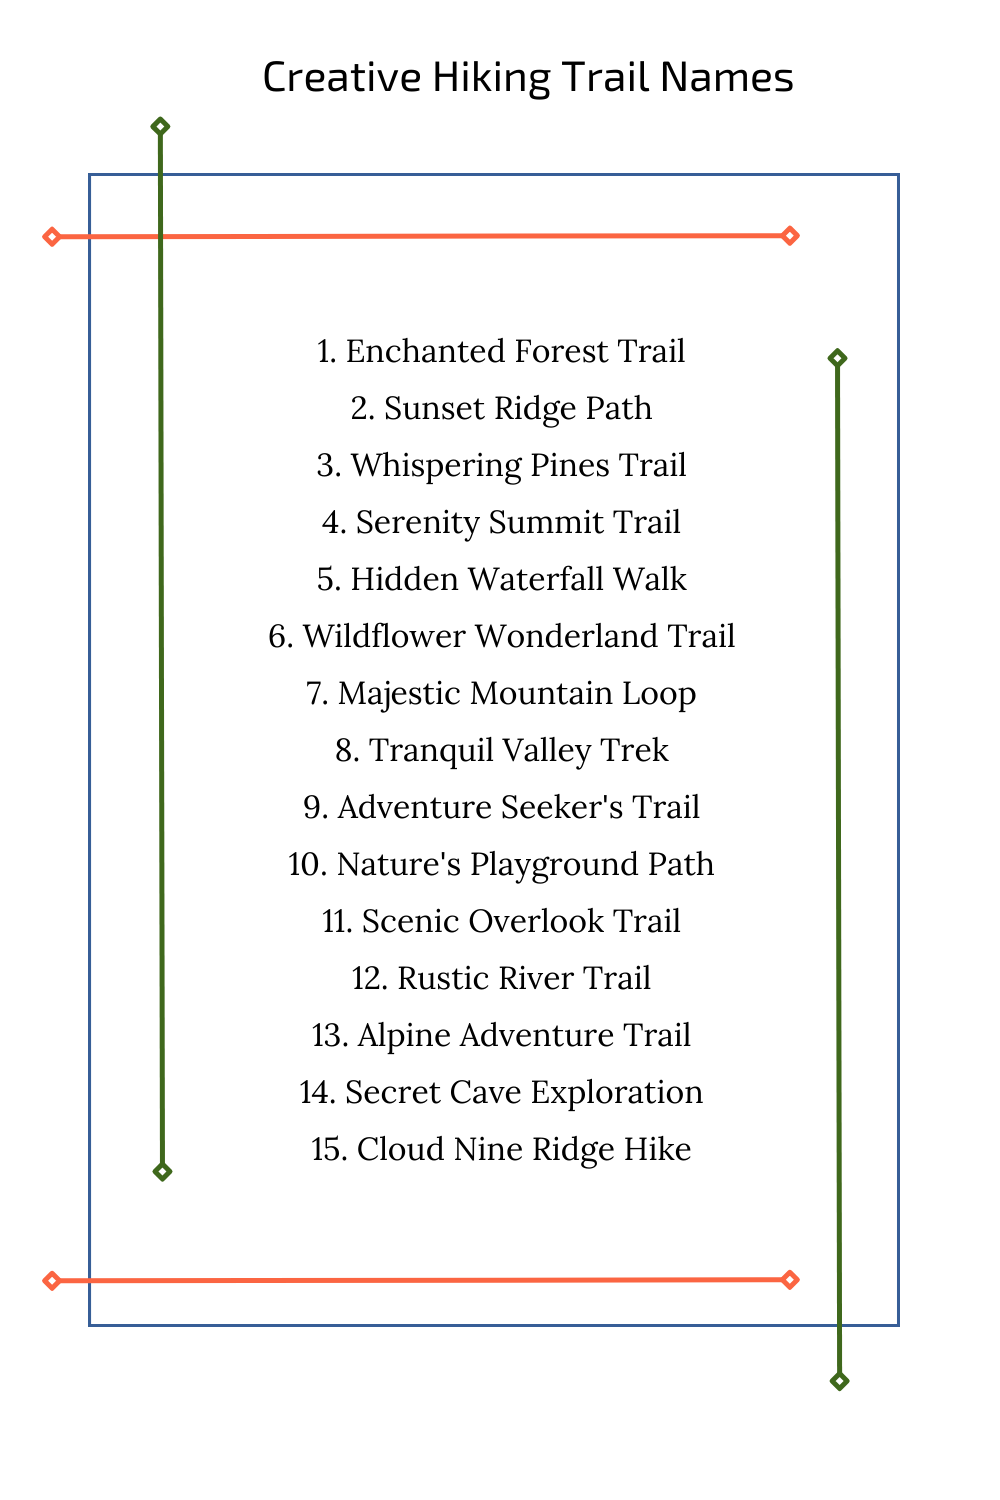 Creative Hiking Trail Names